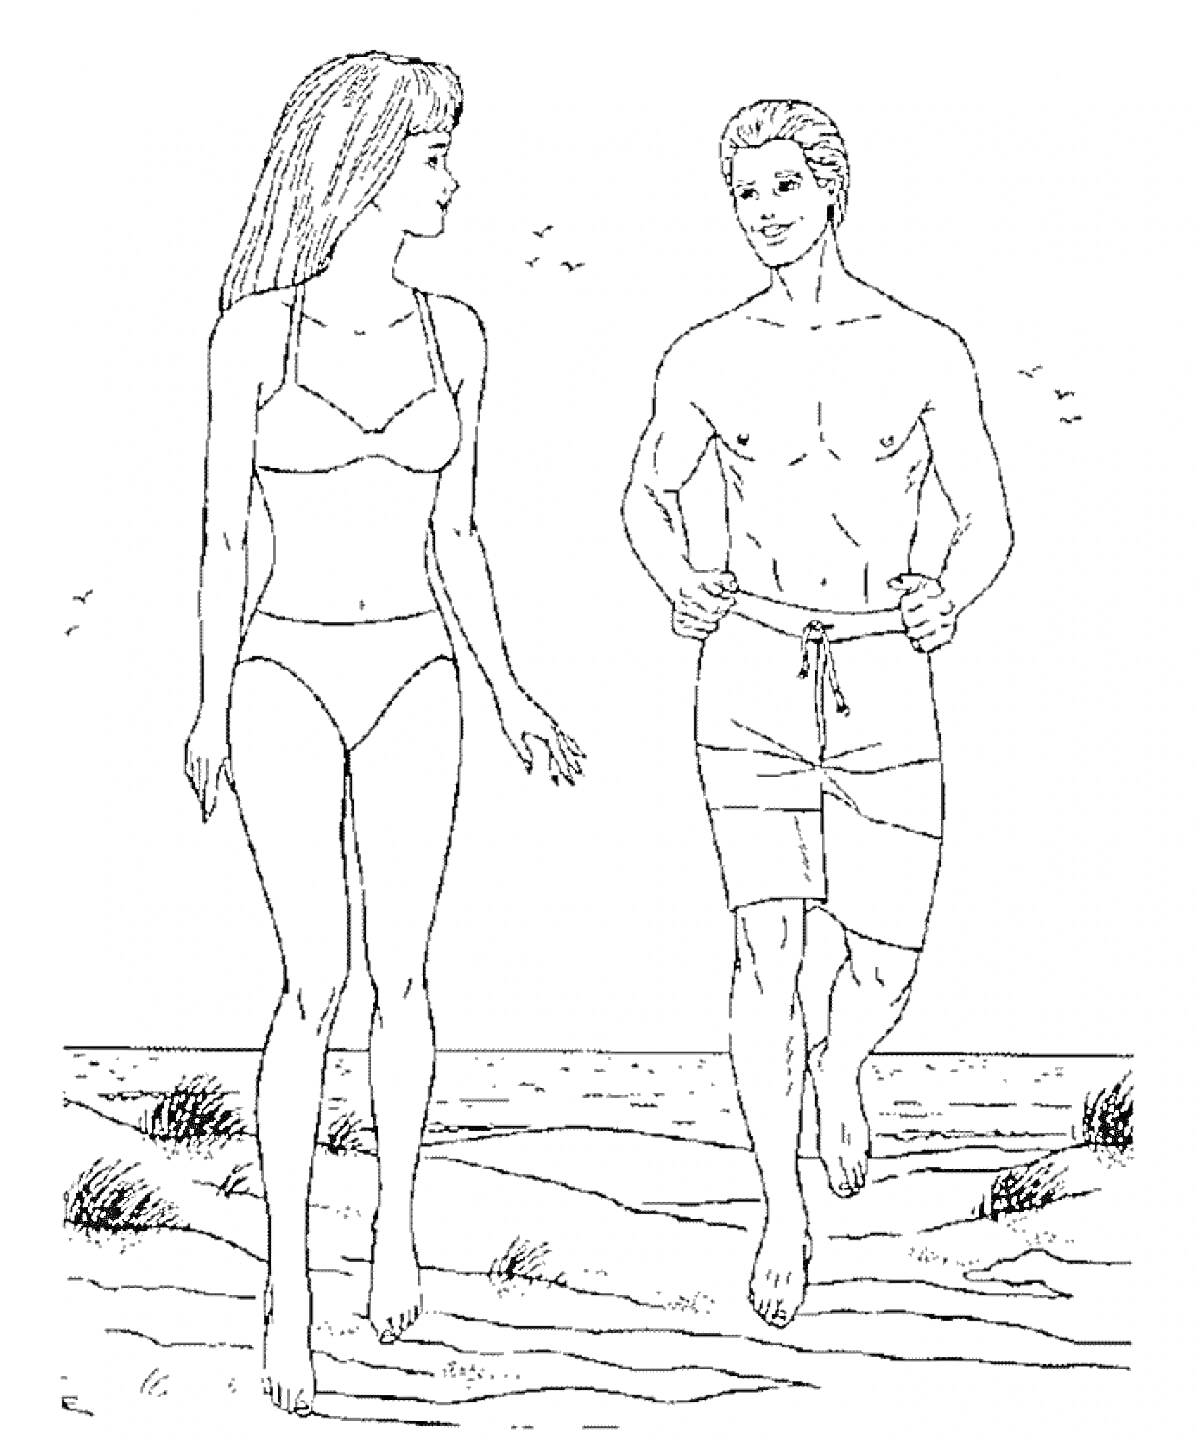 Барби и Кен на пляже, девушка в купальнике, парень в шортах